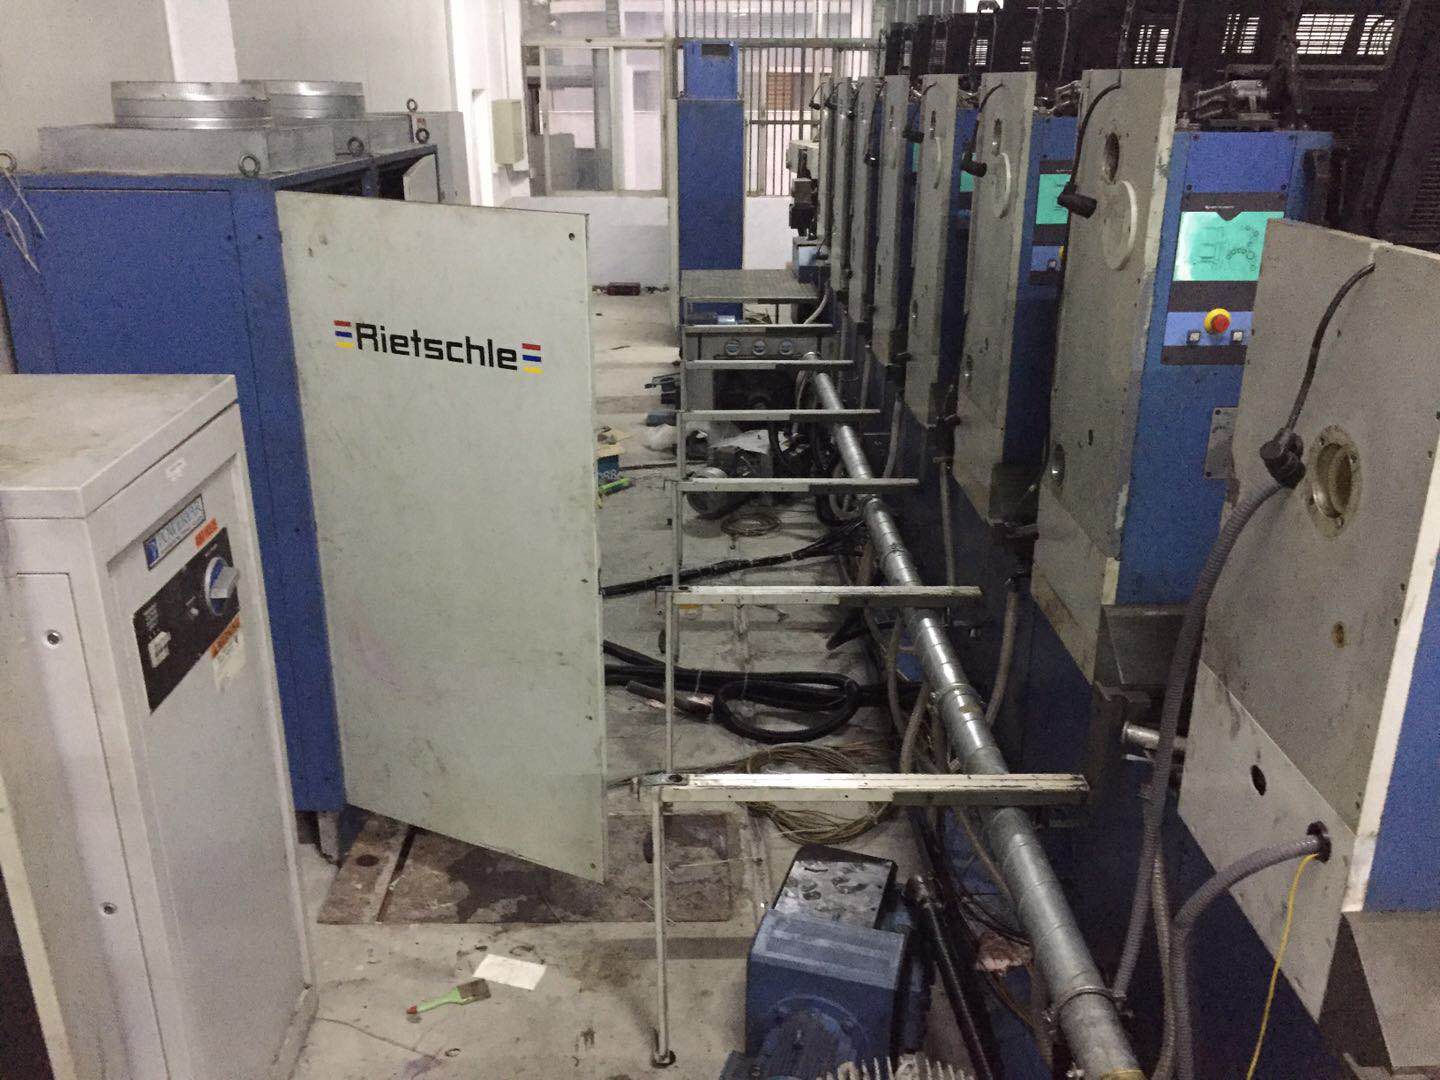 汕头地区 高宝印刷机 RA105-7+L 安装进行中，等待调试中！